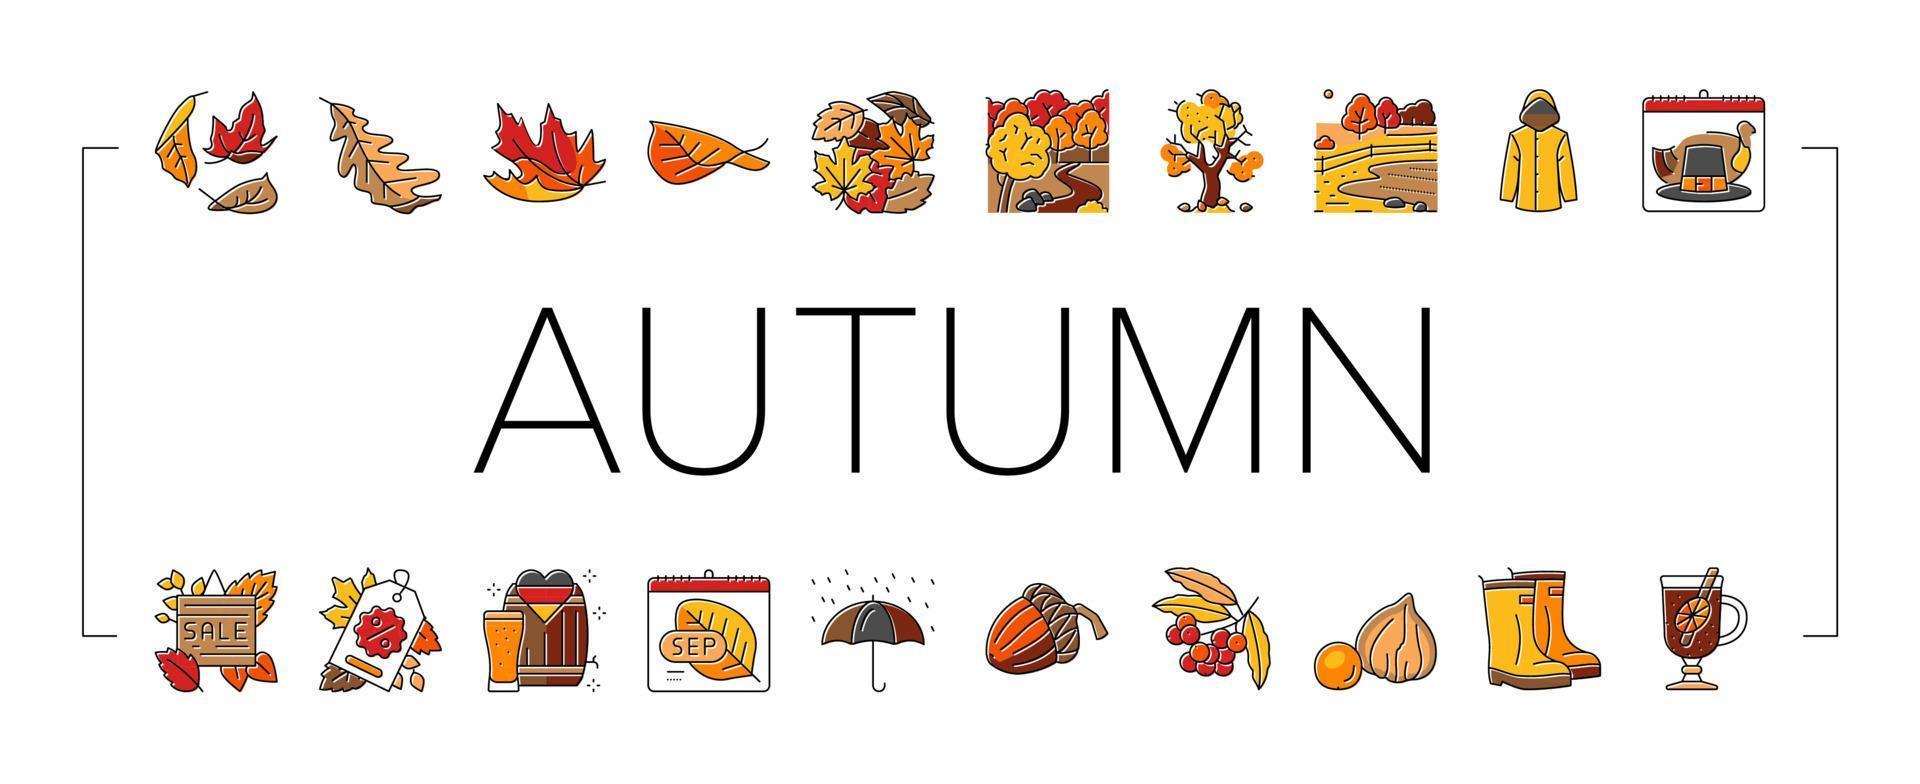 autumn fall leaf nature season icons set vector